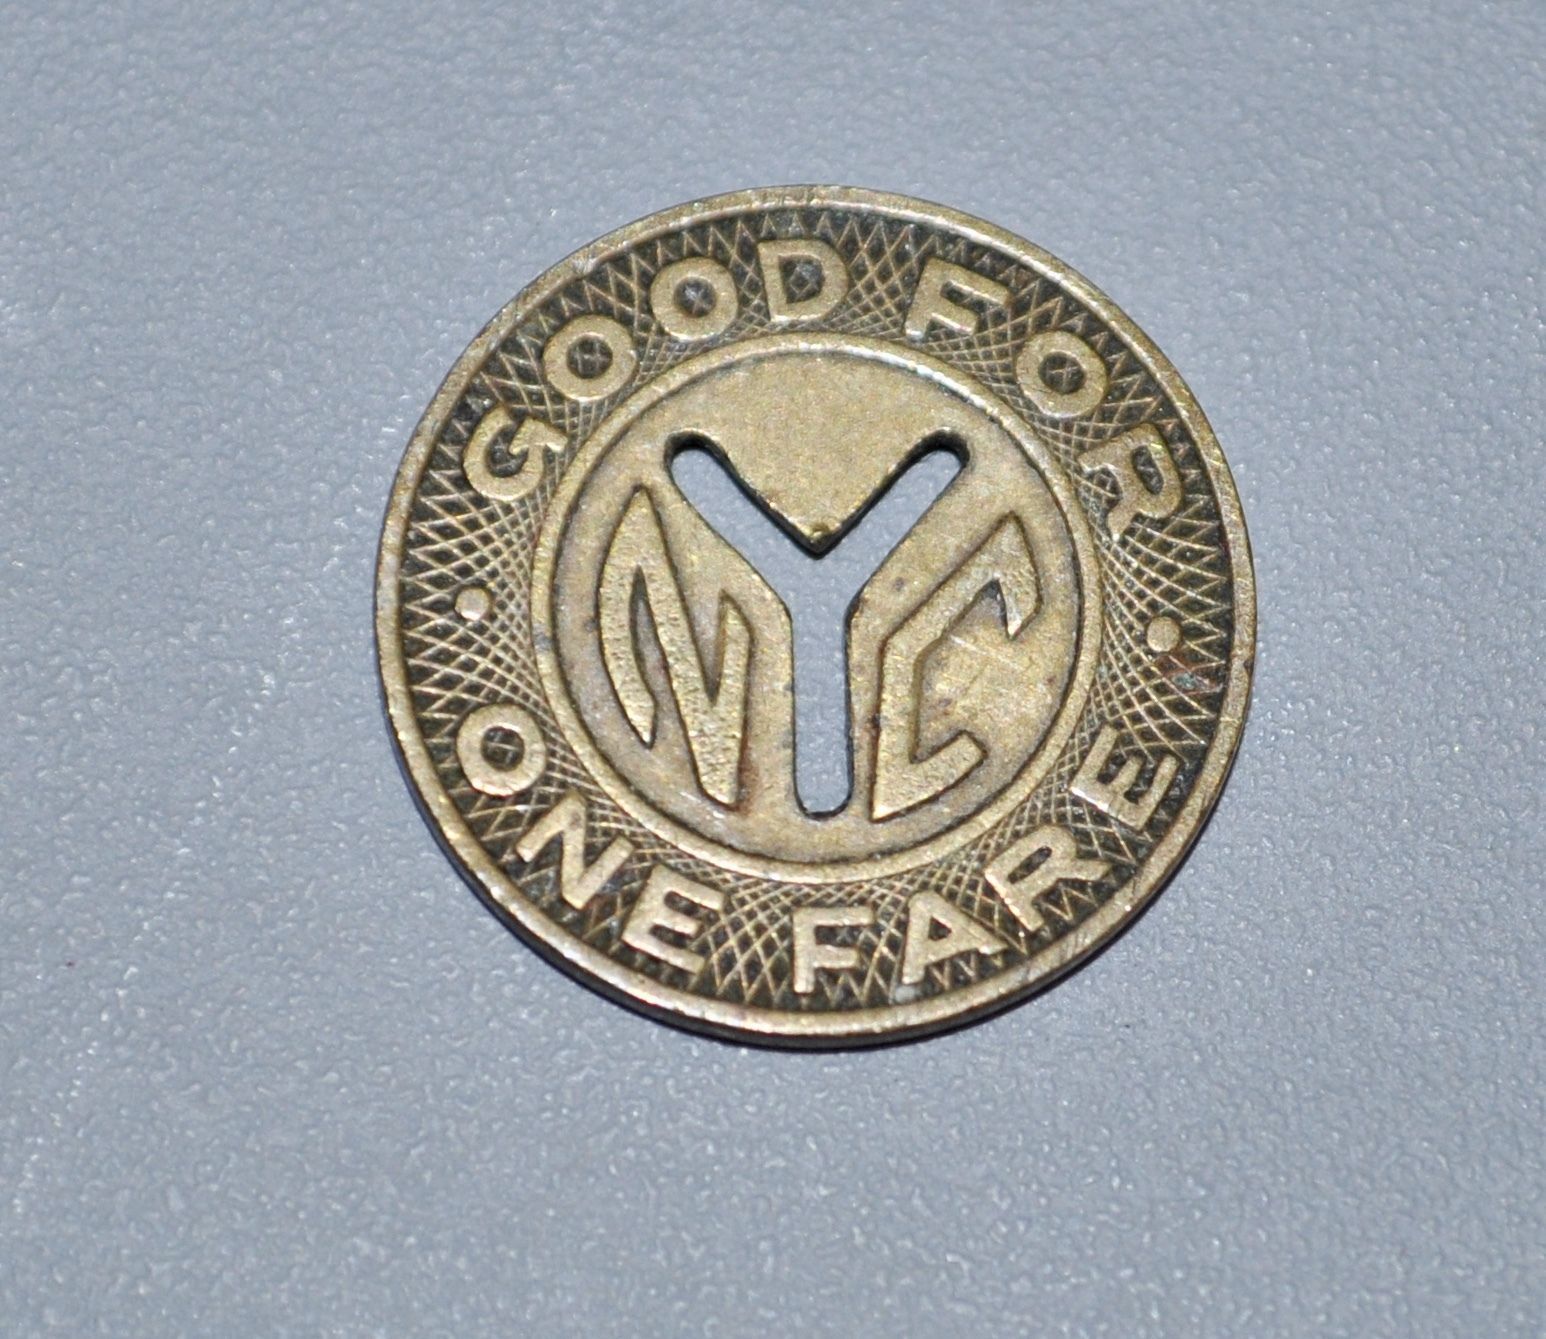 New York City subway token